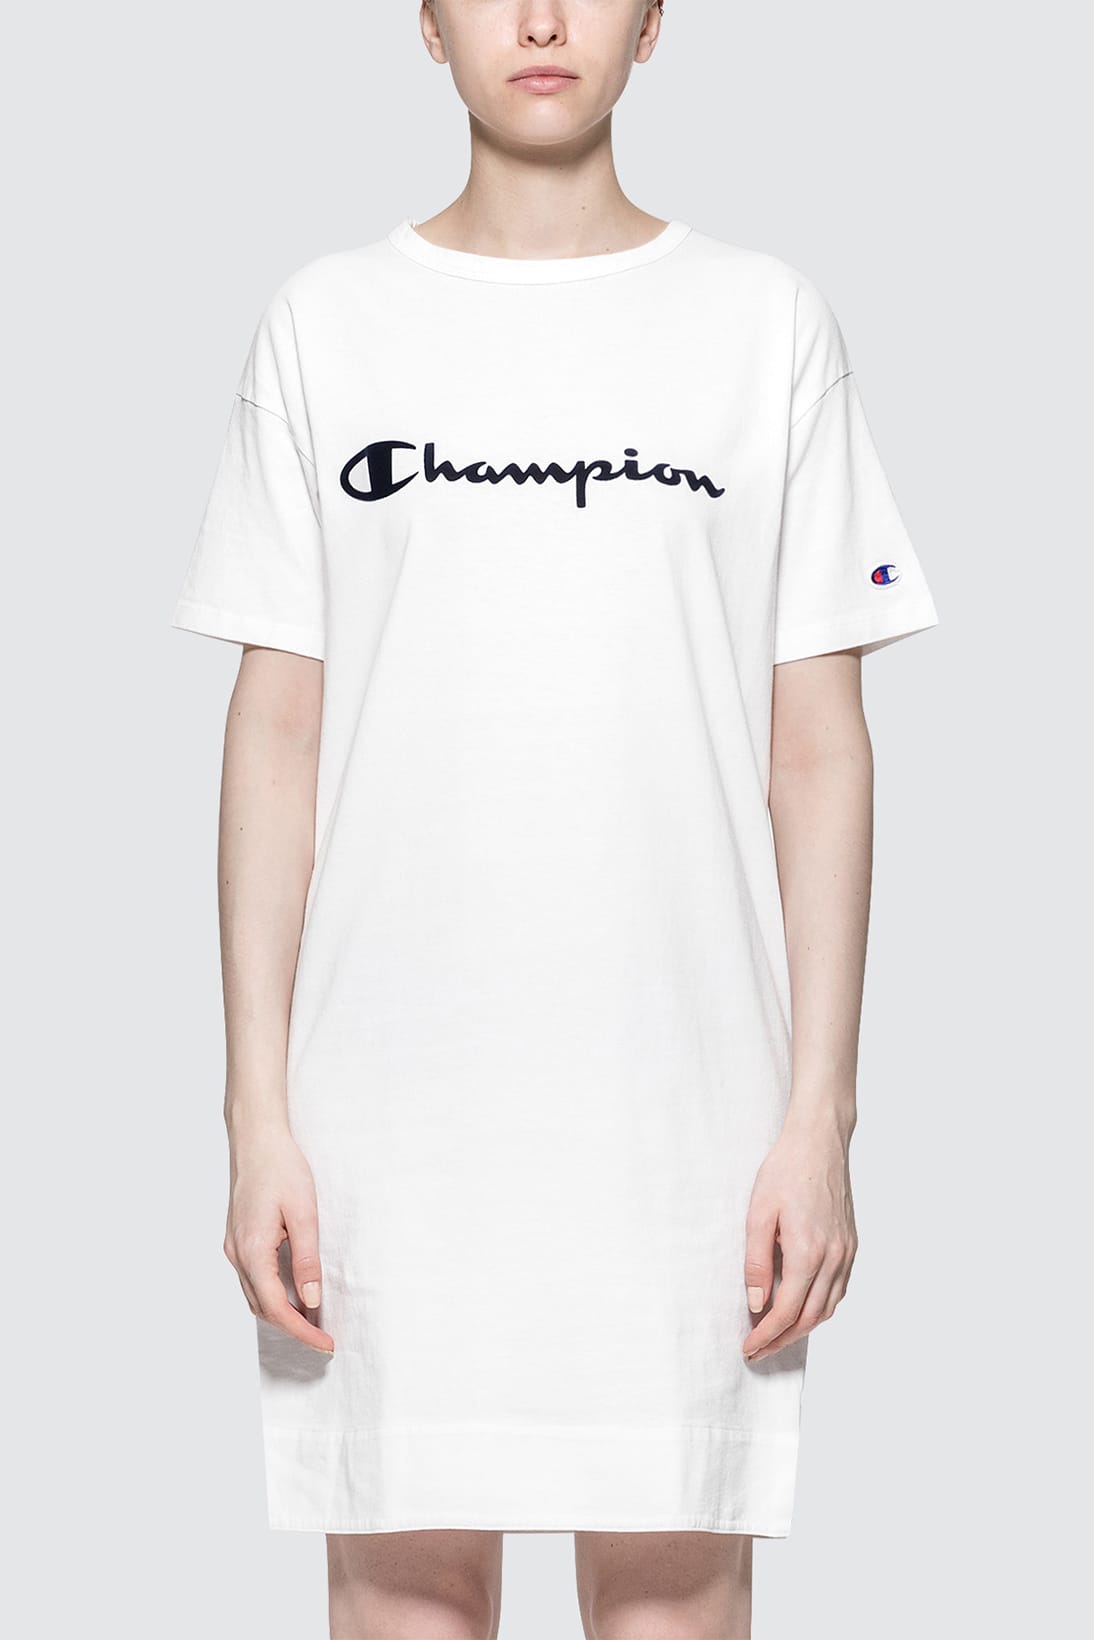 Champion Japan Logo T-Shirt Dress 